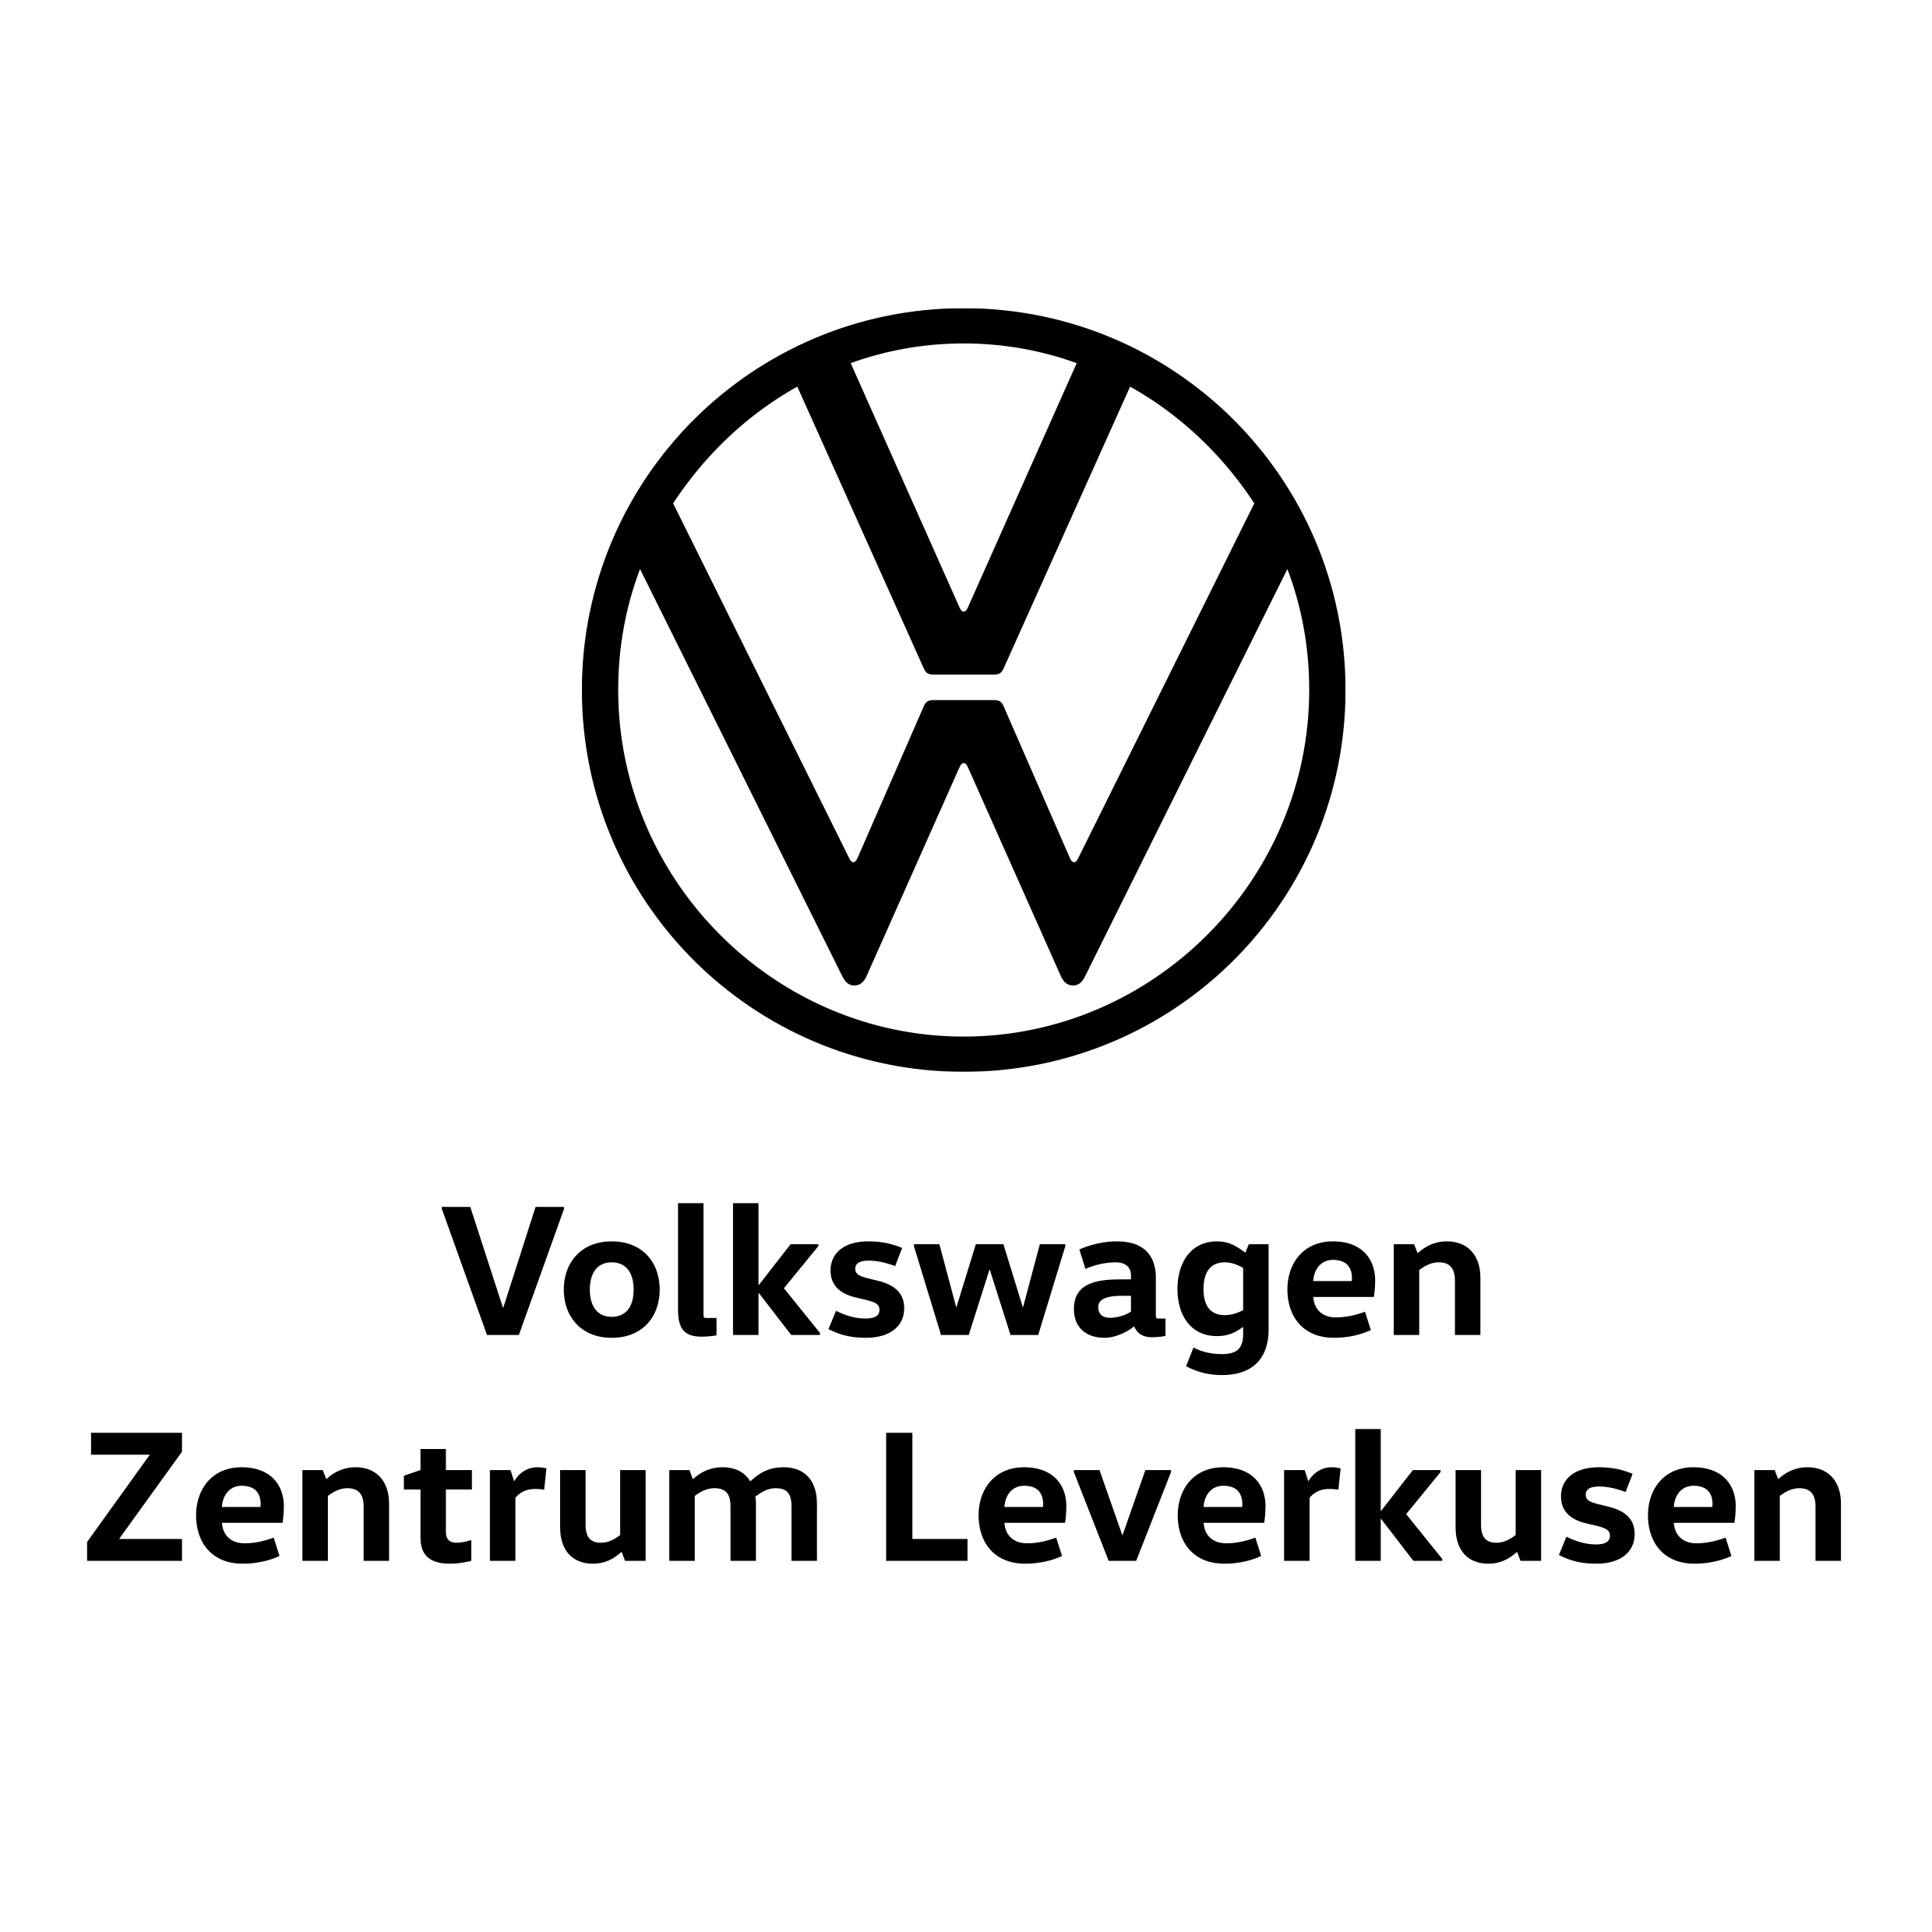 Volkswagen Zentrum Leverkusen - Automobil Zentrum Leverkusen GmbH & Co. KG